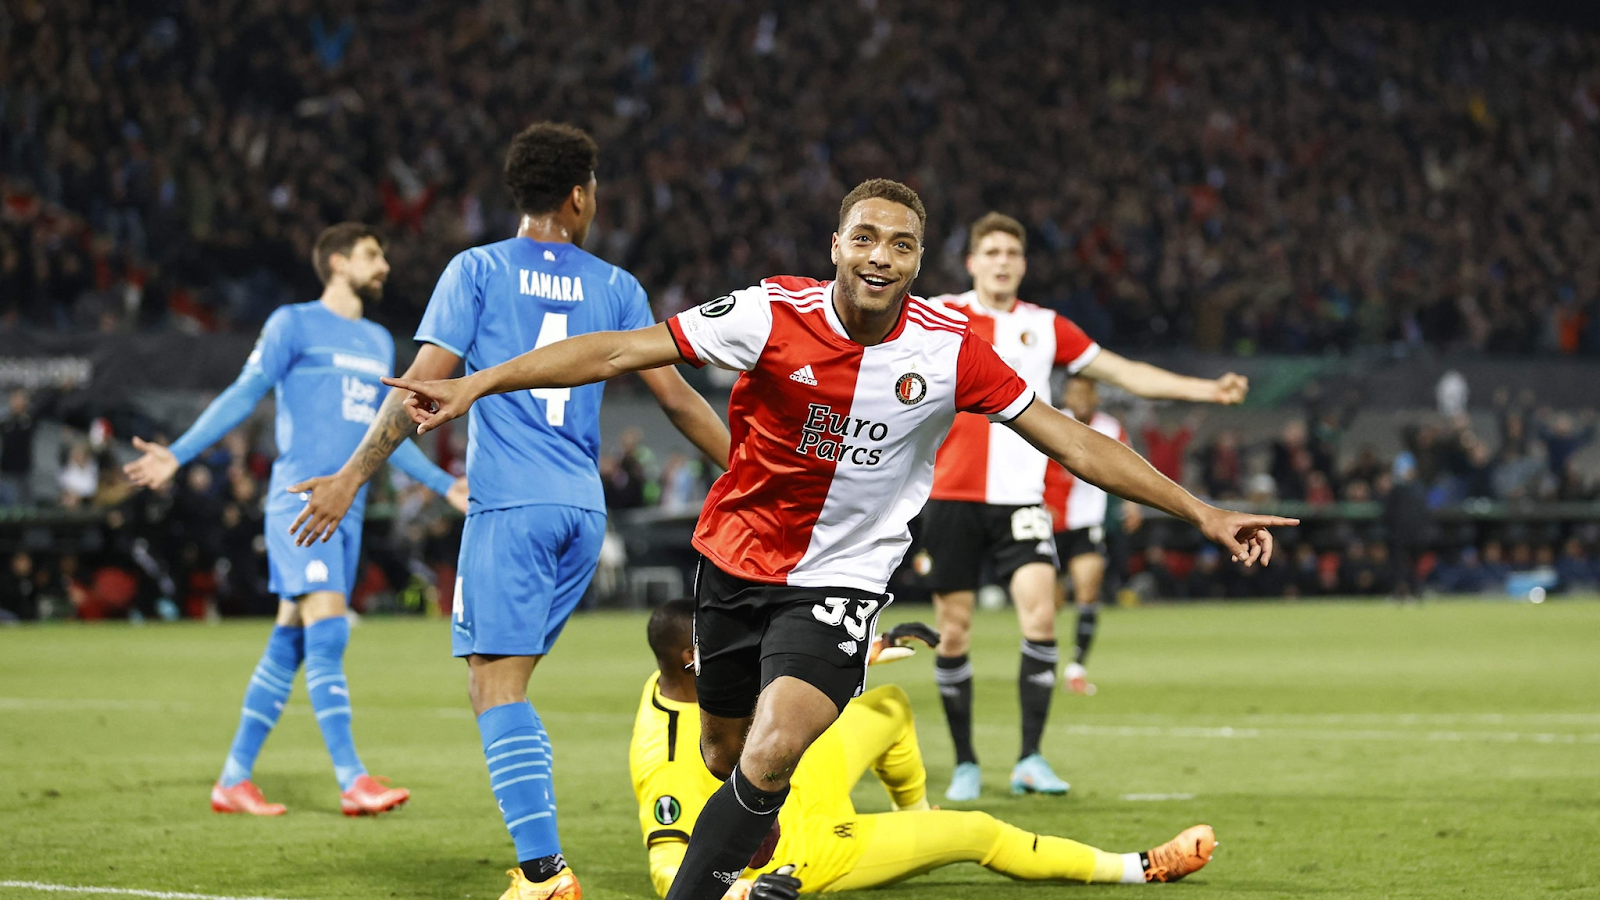 Feyenoord stunned Marseille to win 3-2